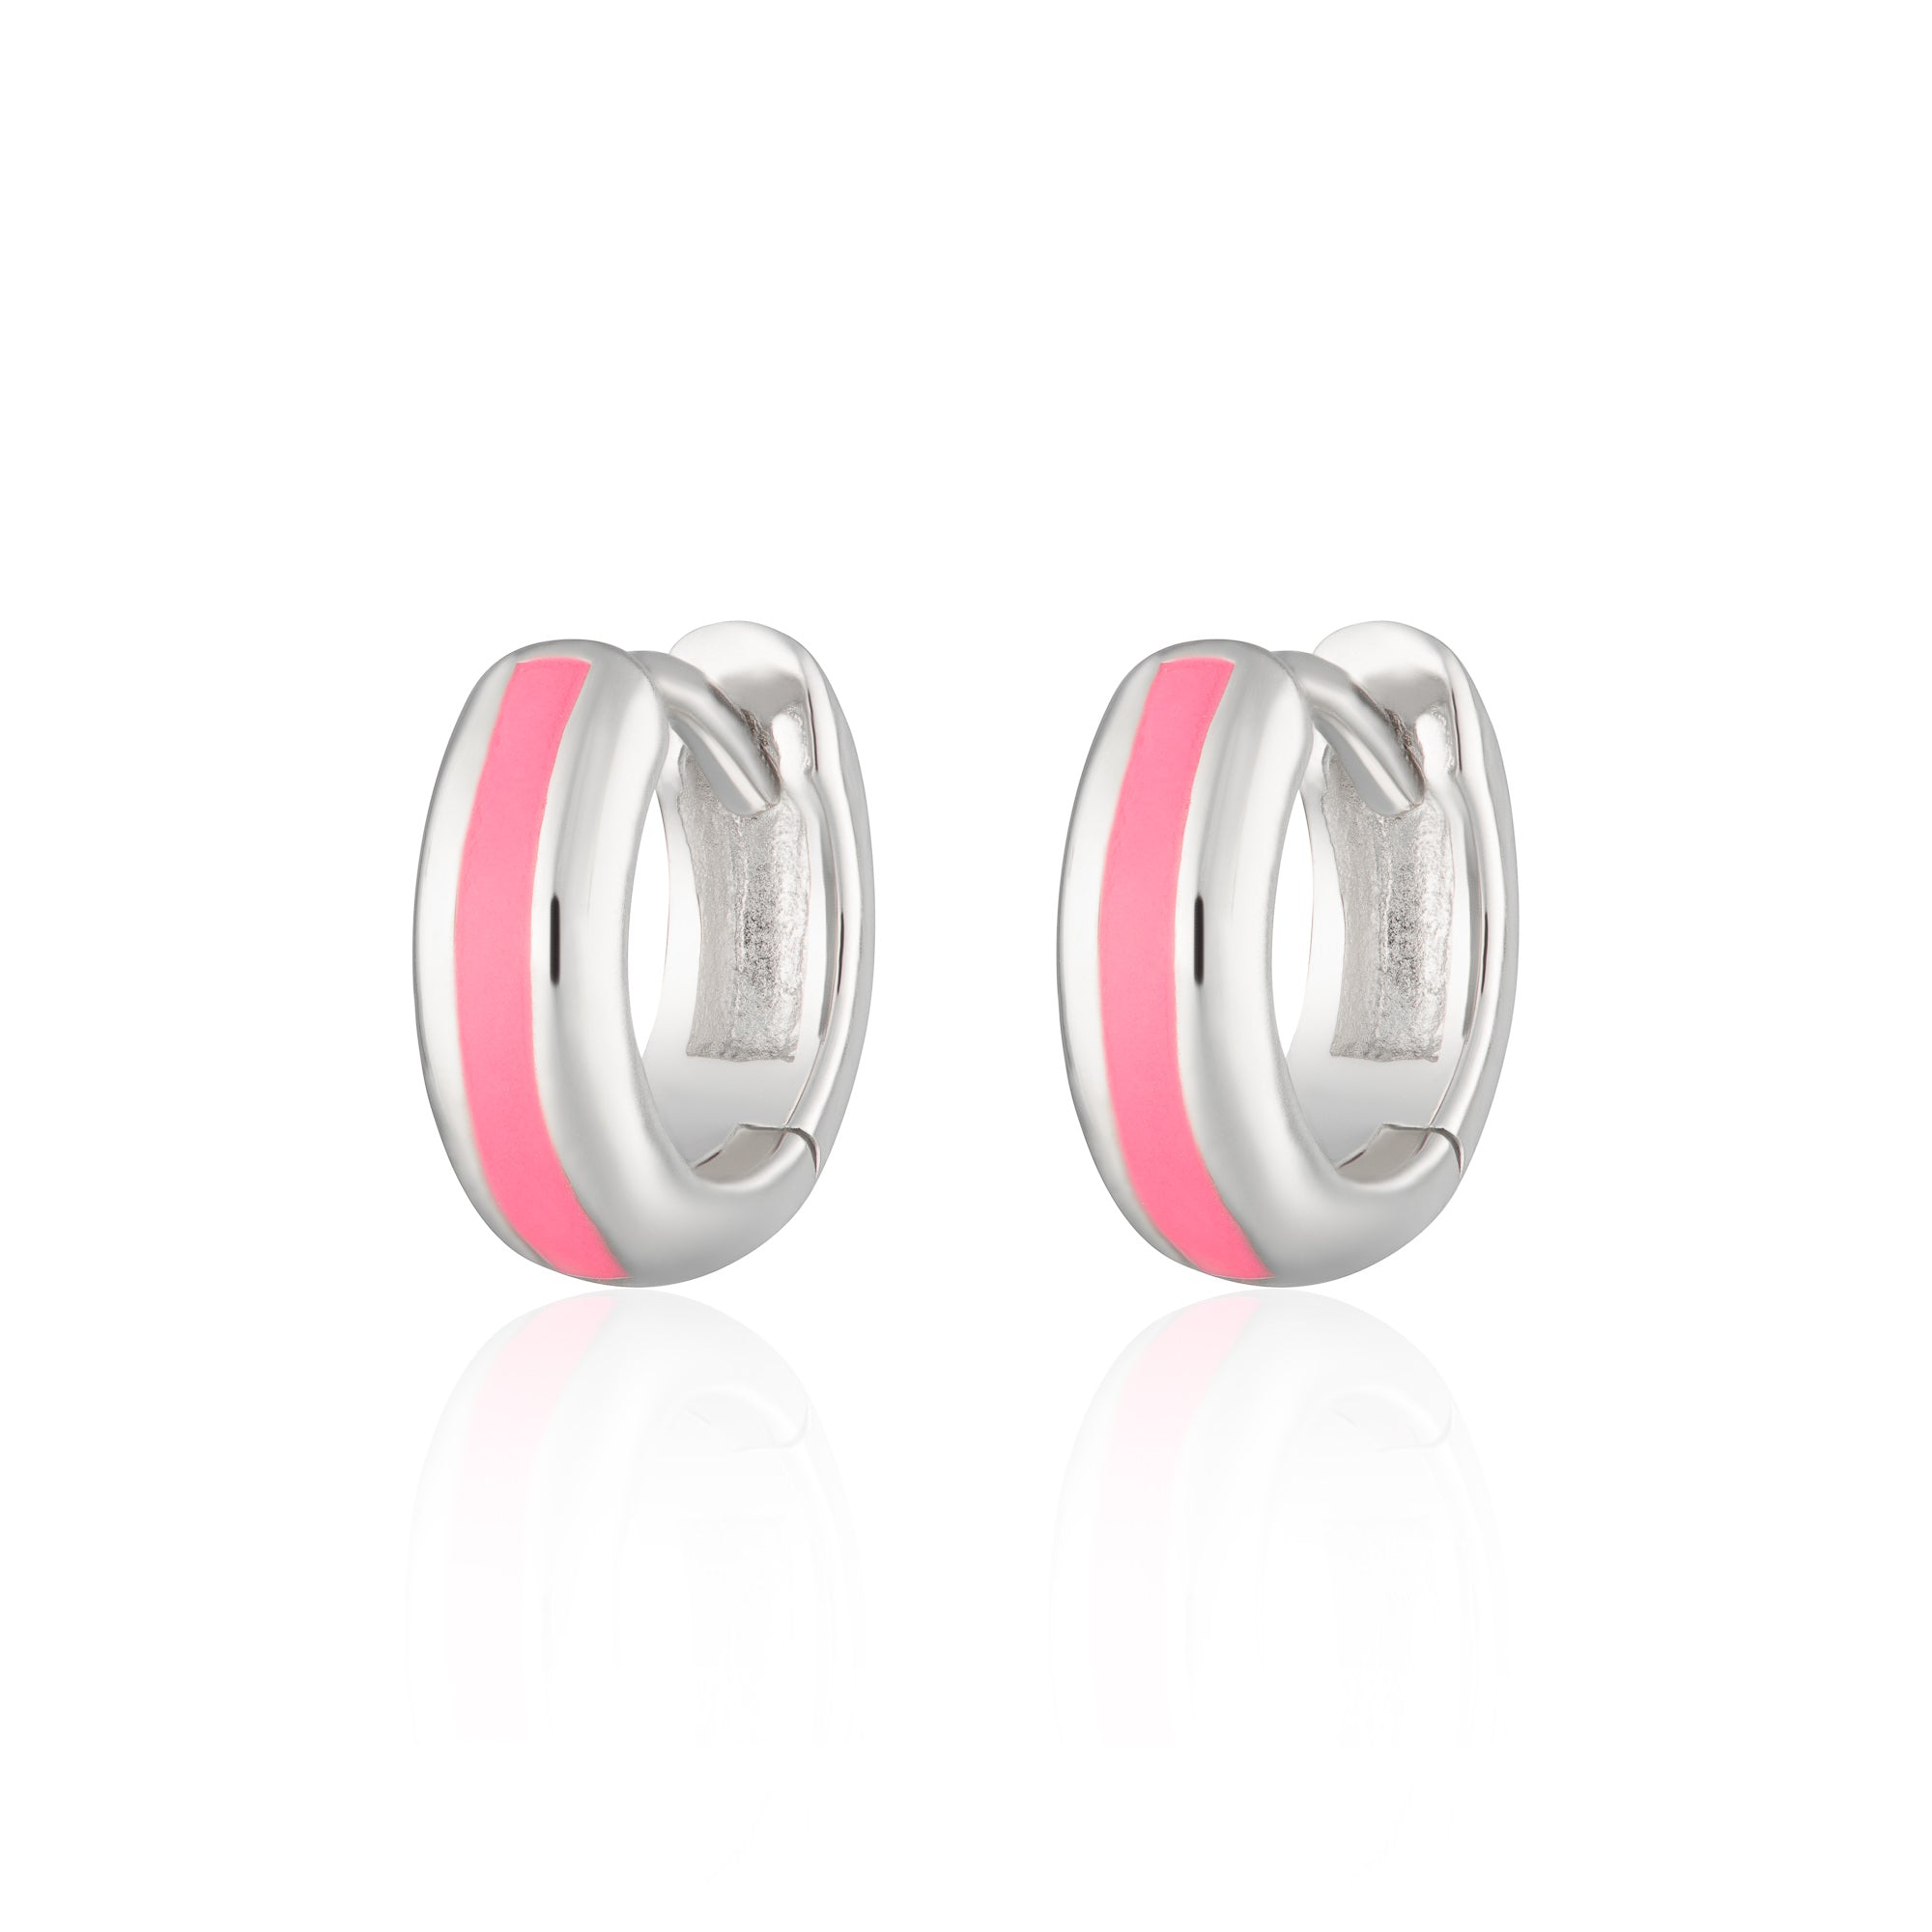 Candy Stripe Huggie Earrings in Neon Pink